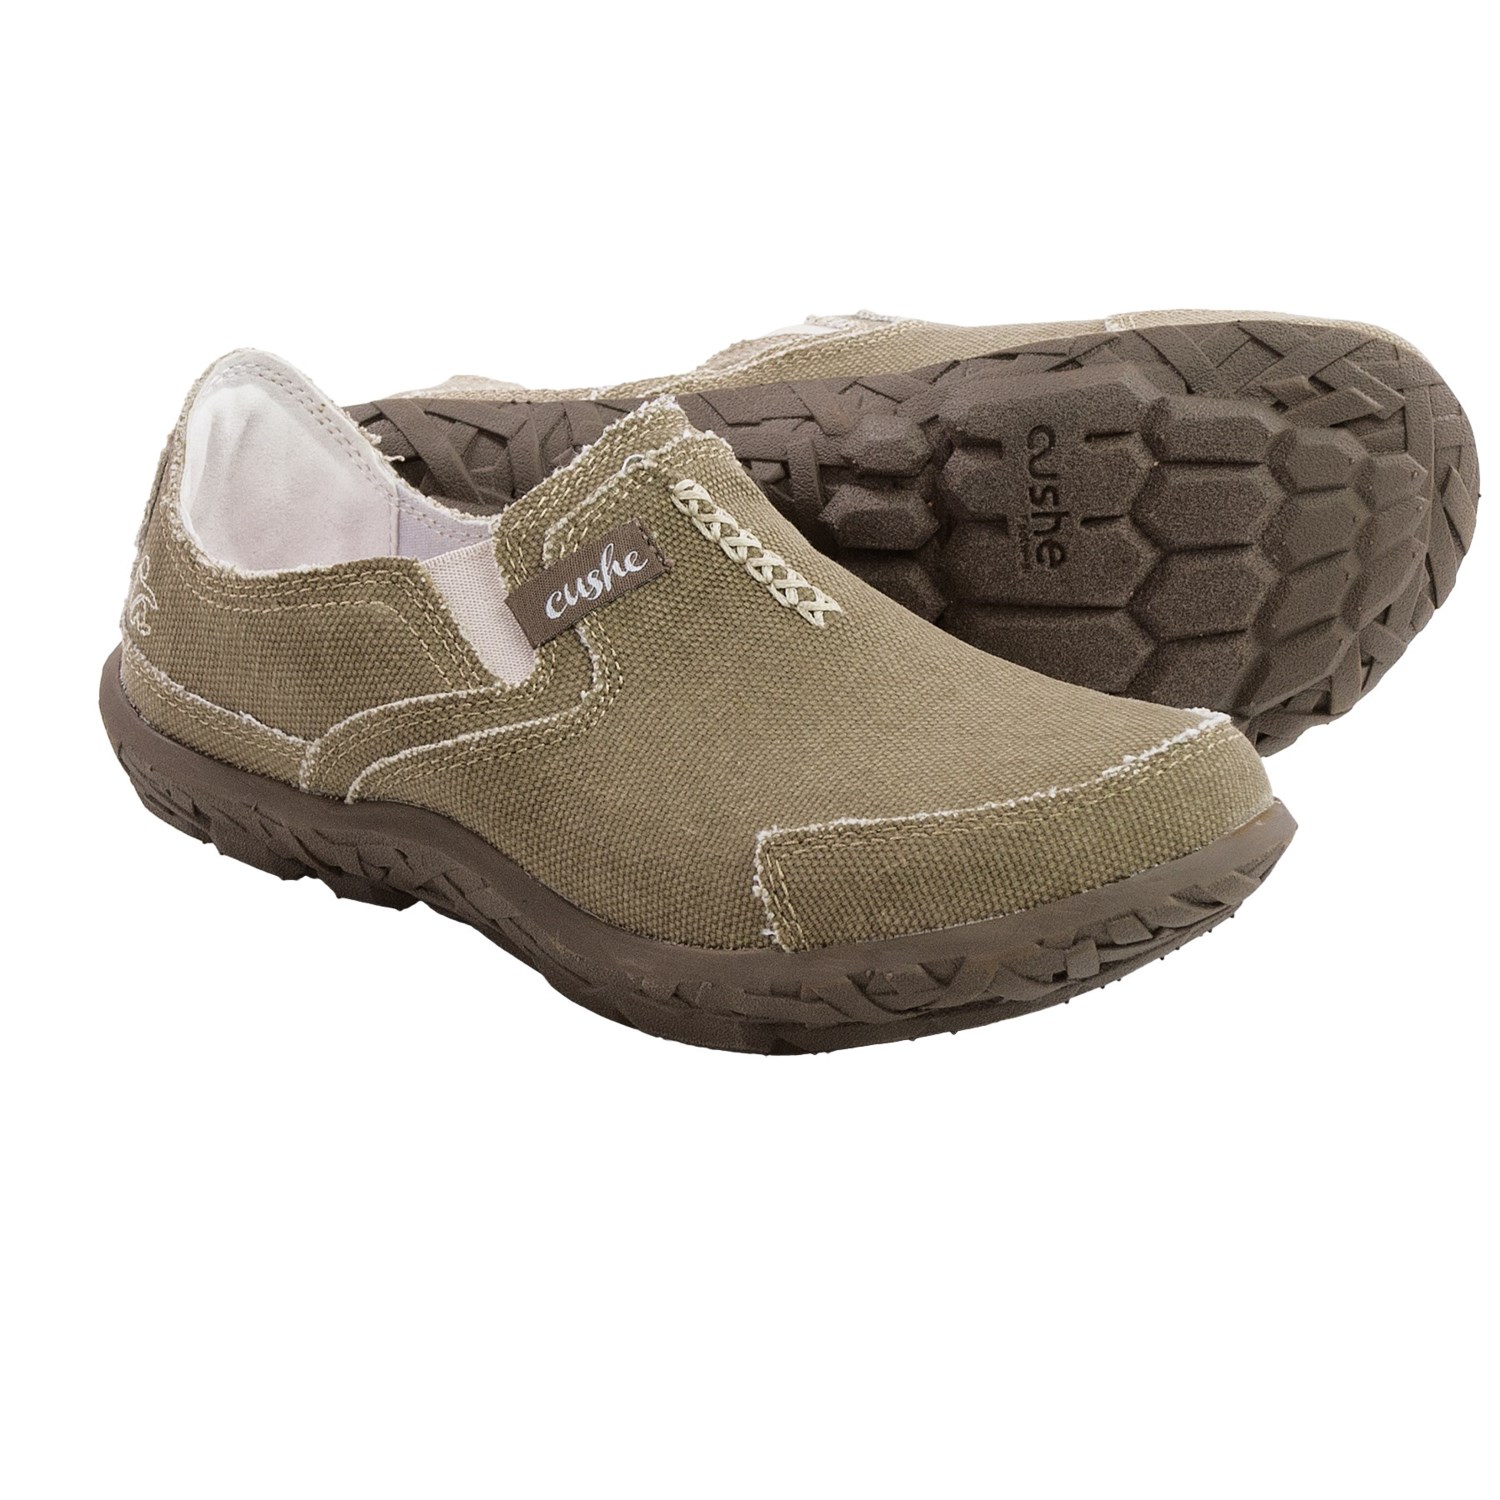 Cushe Slipper II Shoes (For Women) - Save 69%